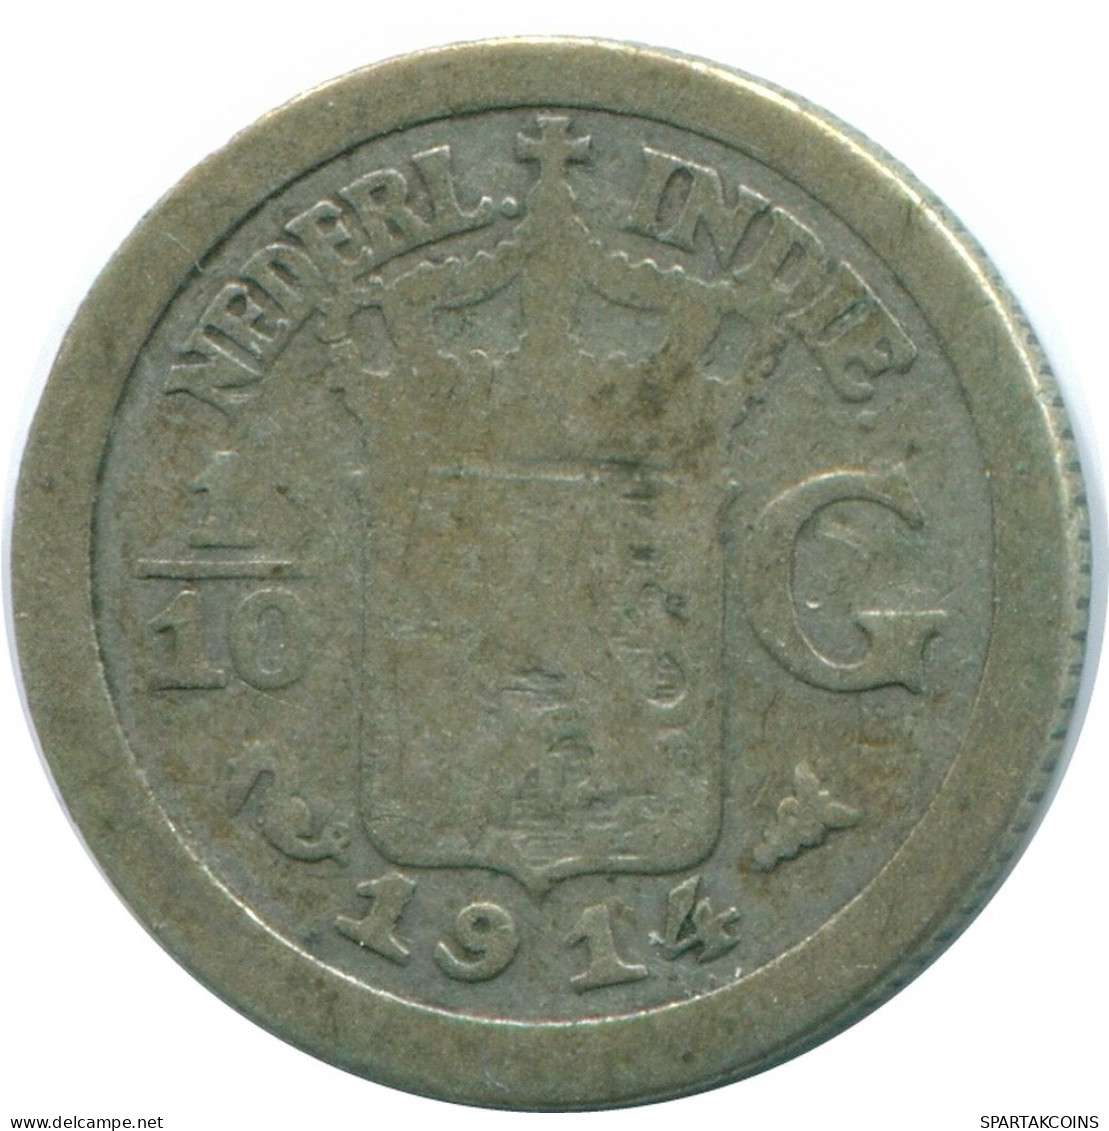 1/10 GULDEN 1914 INDIAS ORIENTALES DE LOS PAÍSES BAJOS PLATA #NL13303.3.E.A - Nederlands-Indië